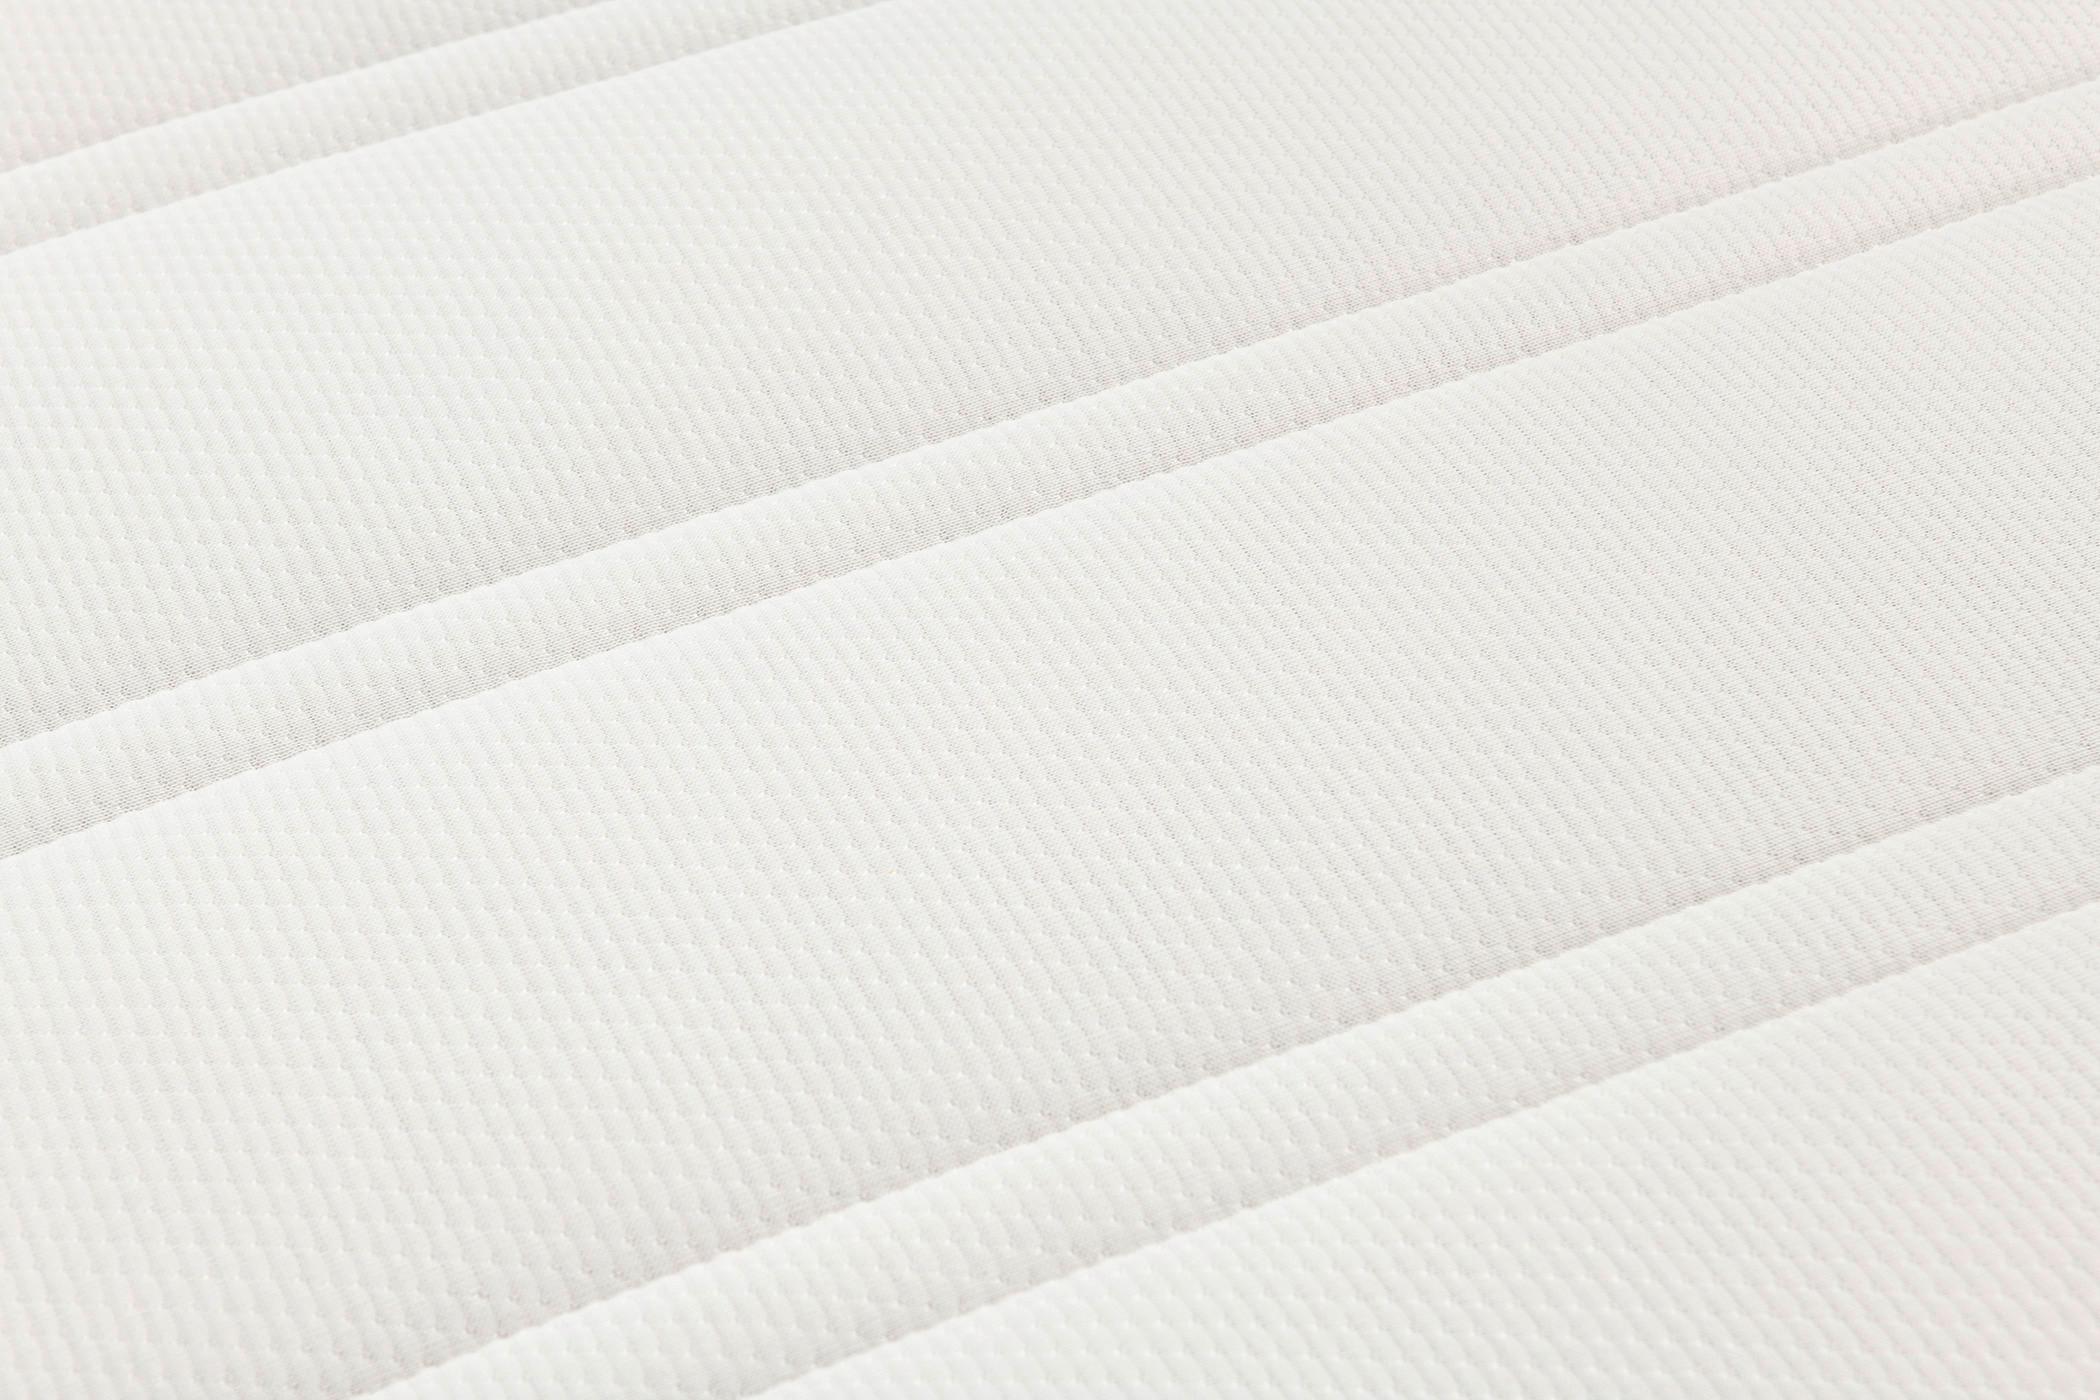 Táskarugós Matrac 90x200cm Cocos Pocket - Fehér, Textil (90/200cm)